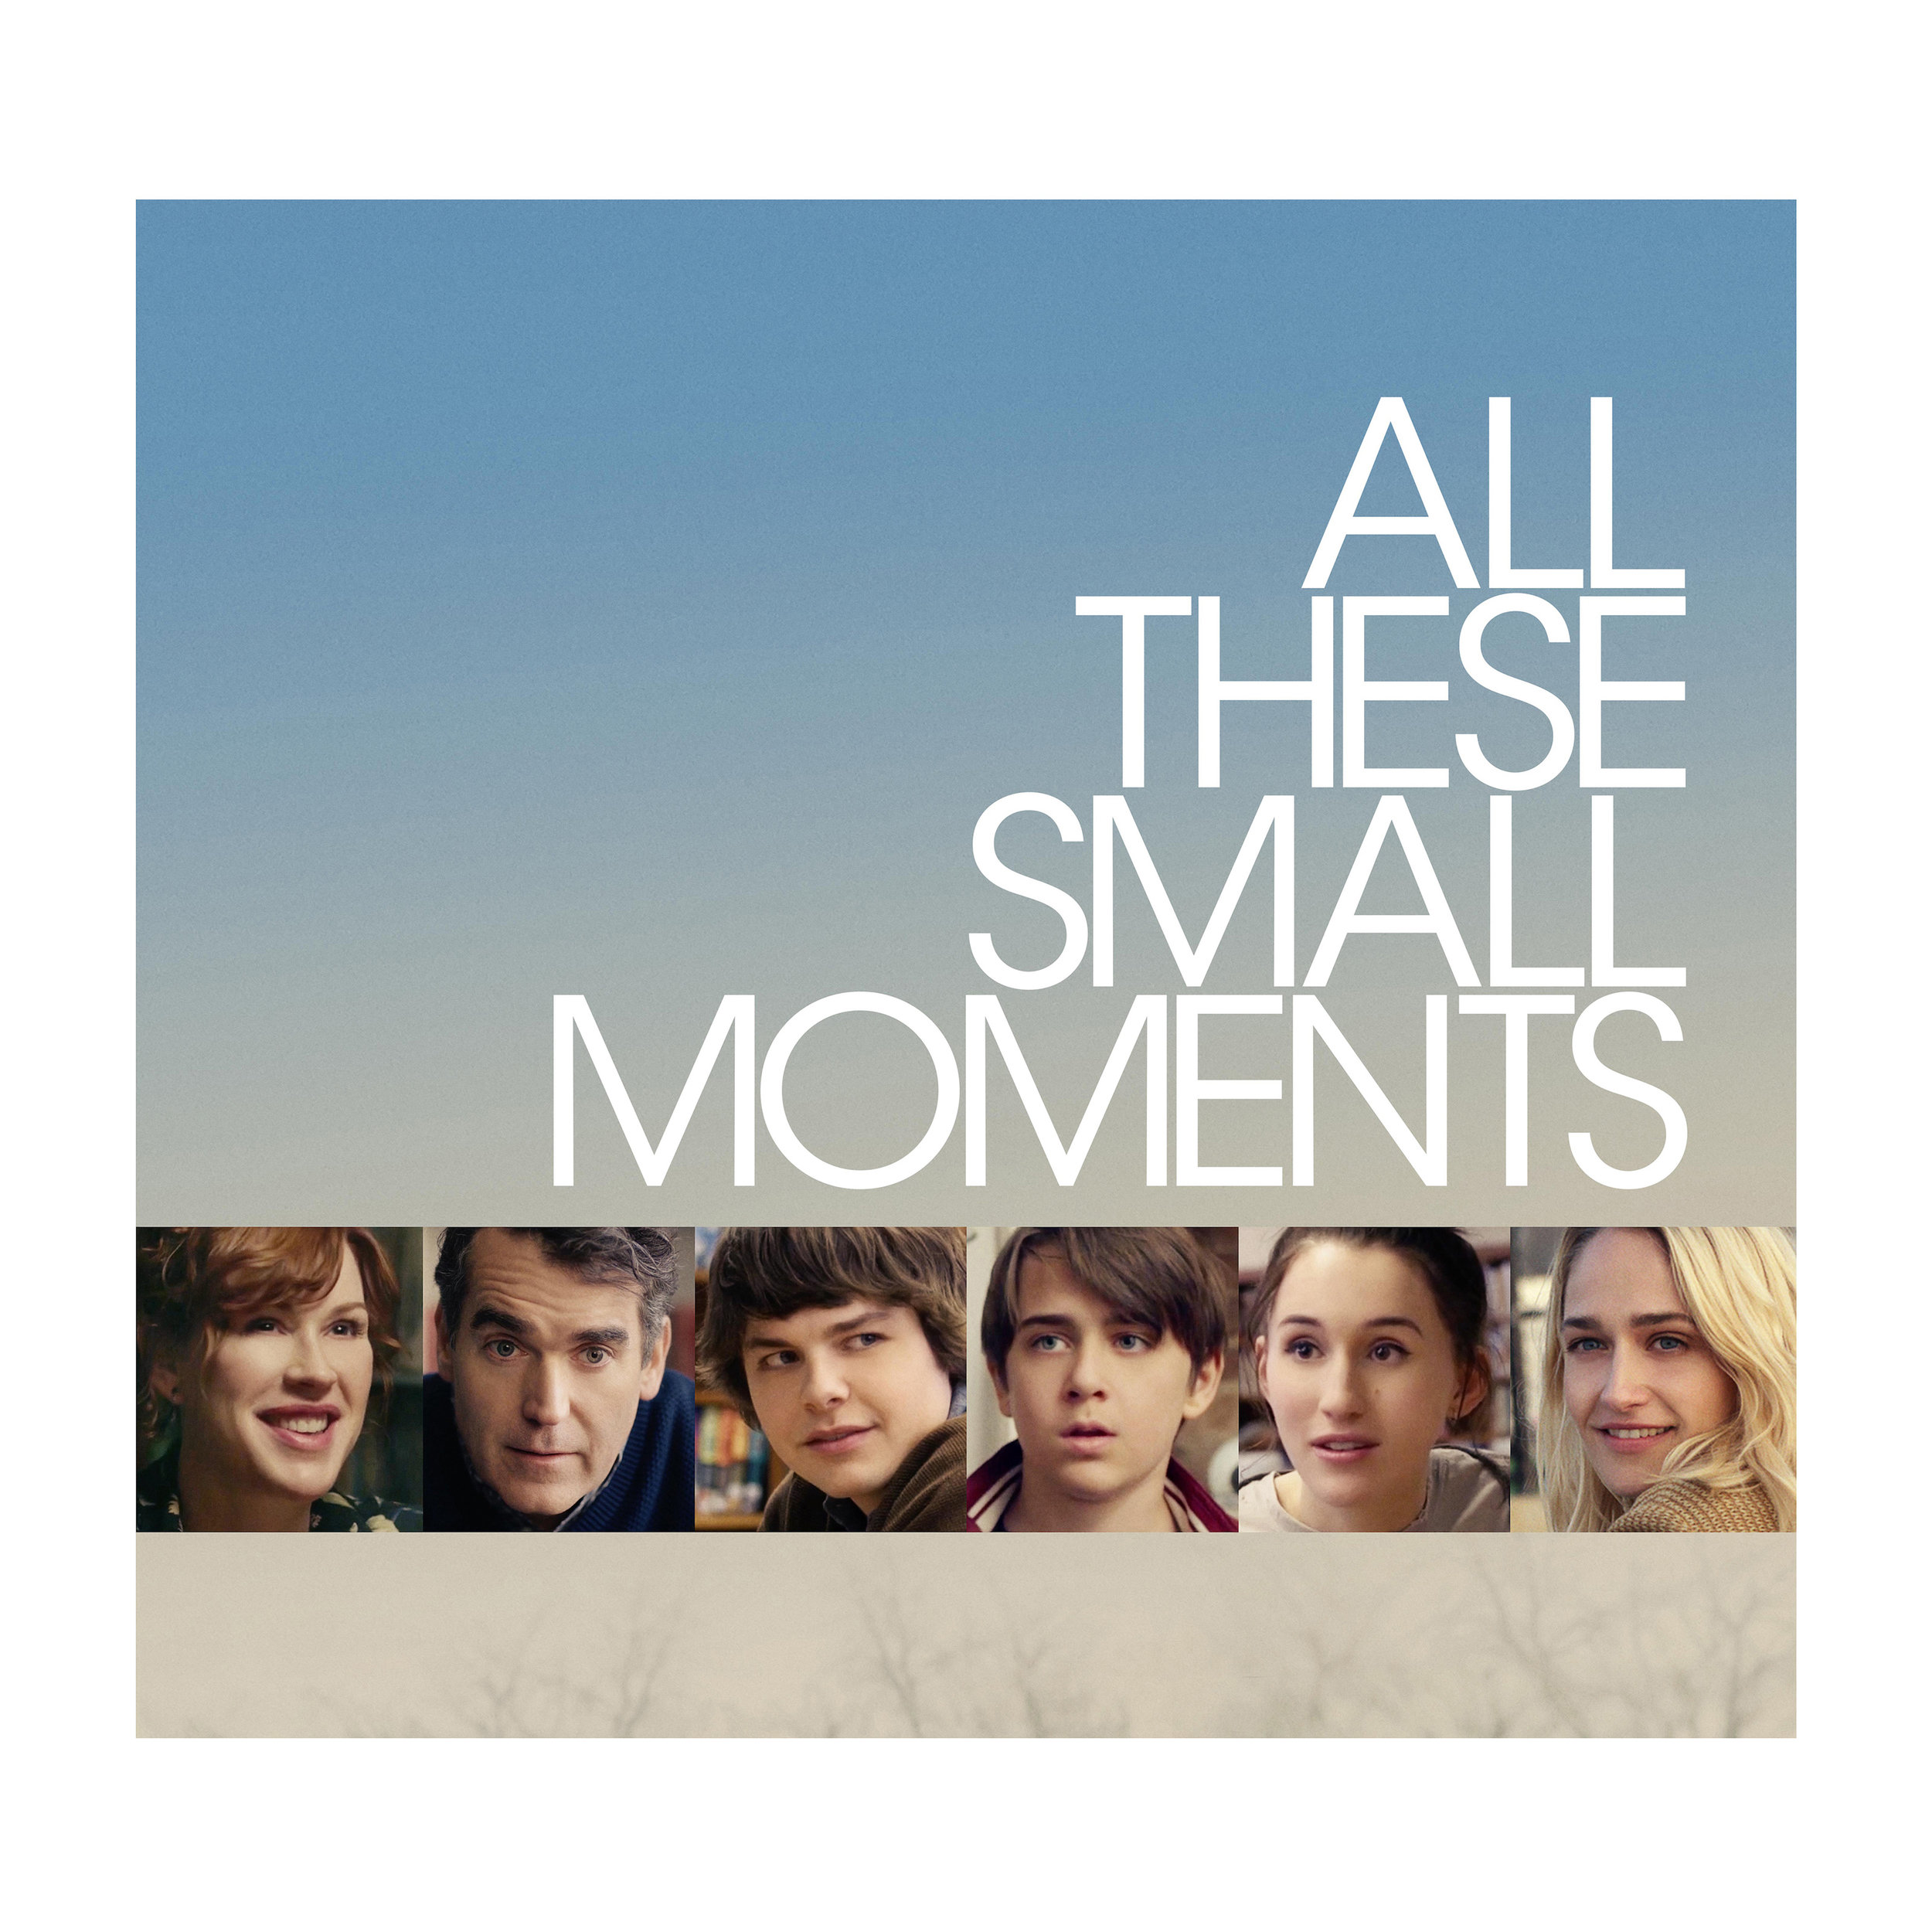 All these small moments (2018). Small moments. Small moment